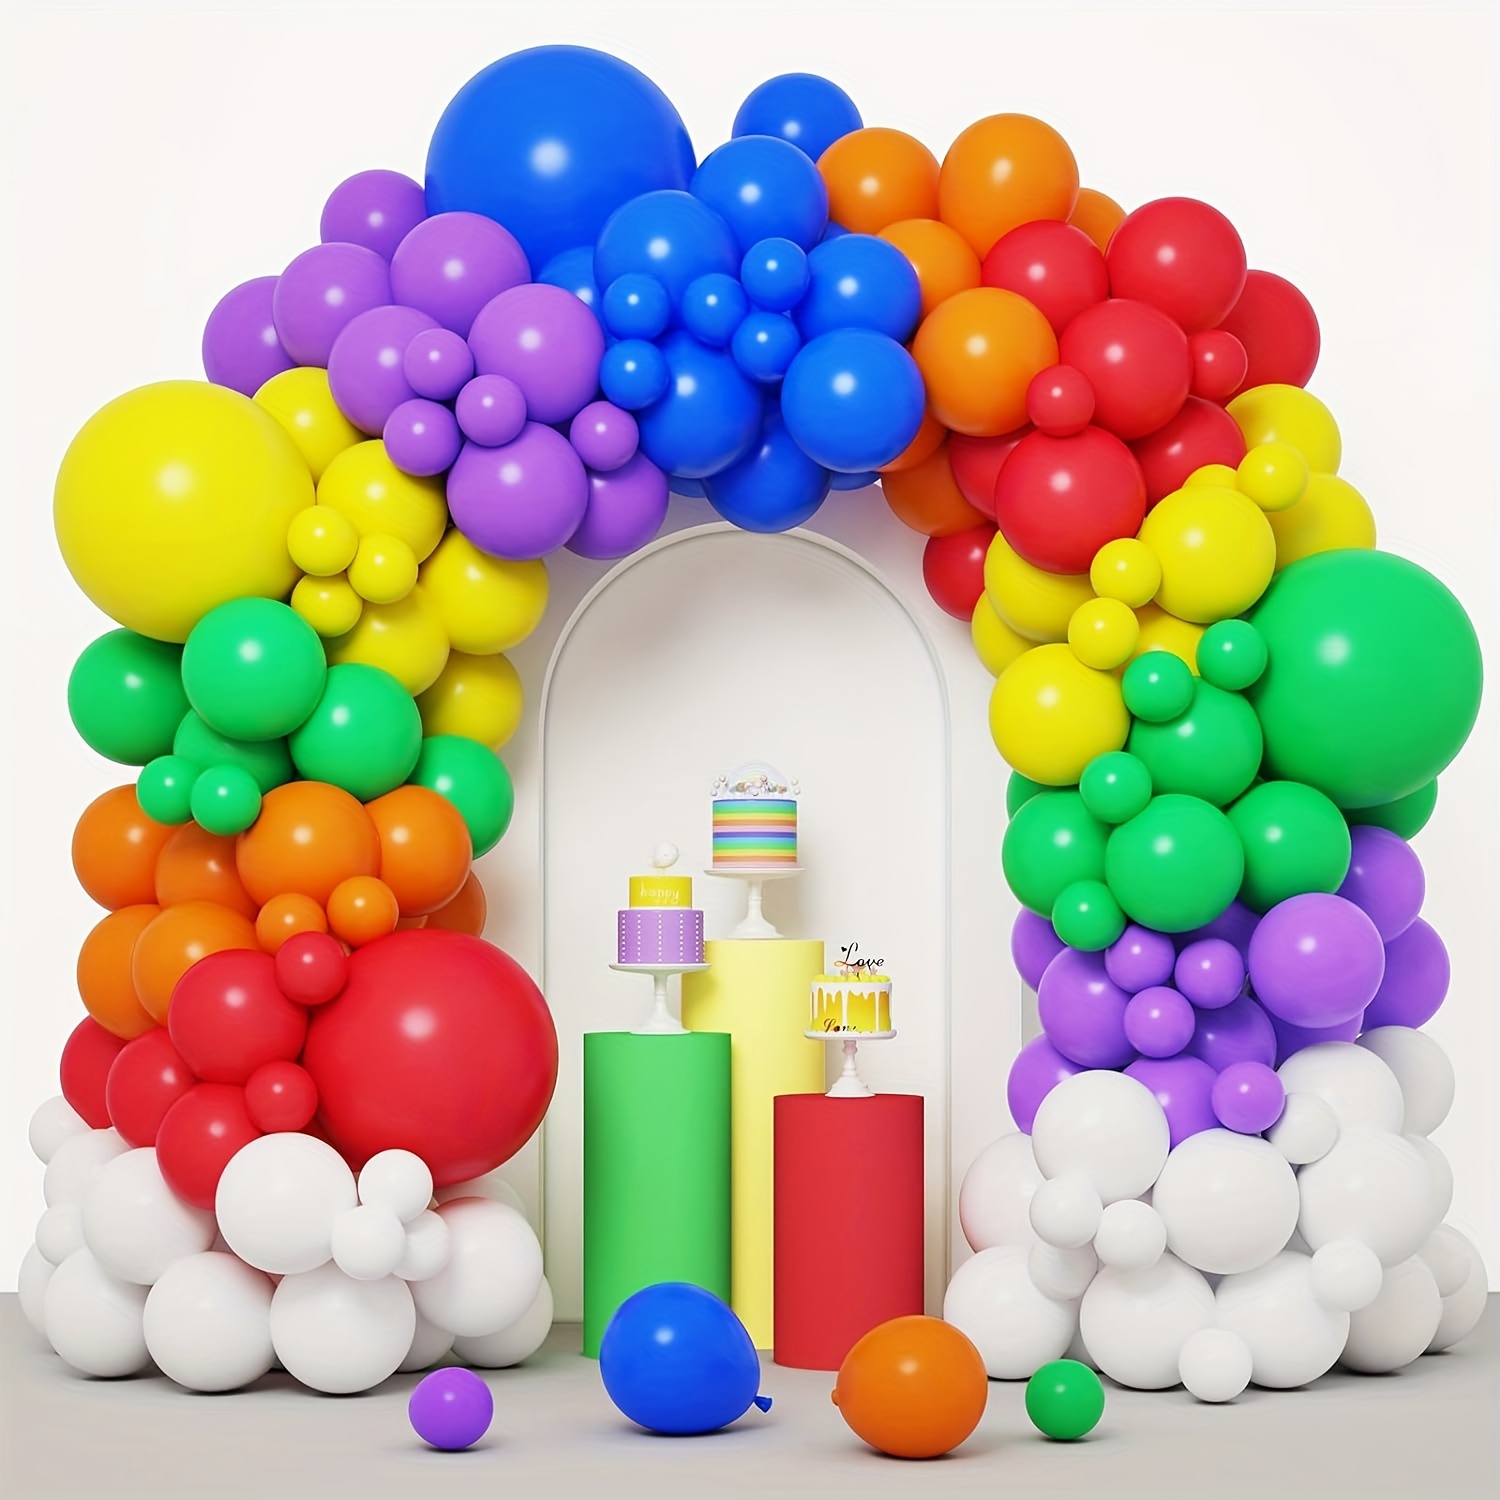 Rainbow Balloons Arch Kit 175 Pcs Rainbow Balloons For Rainbow